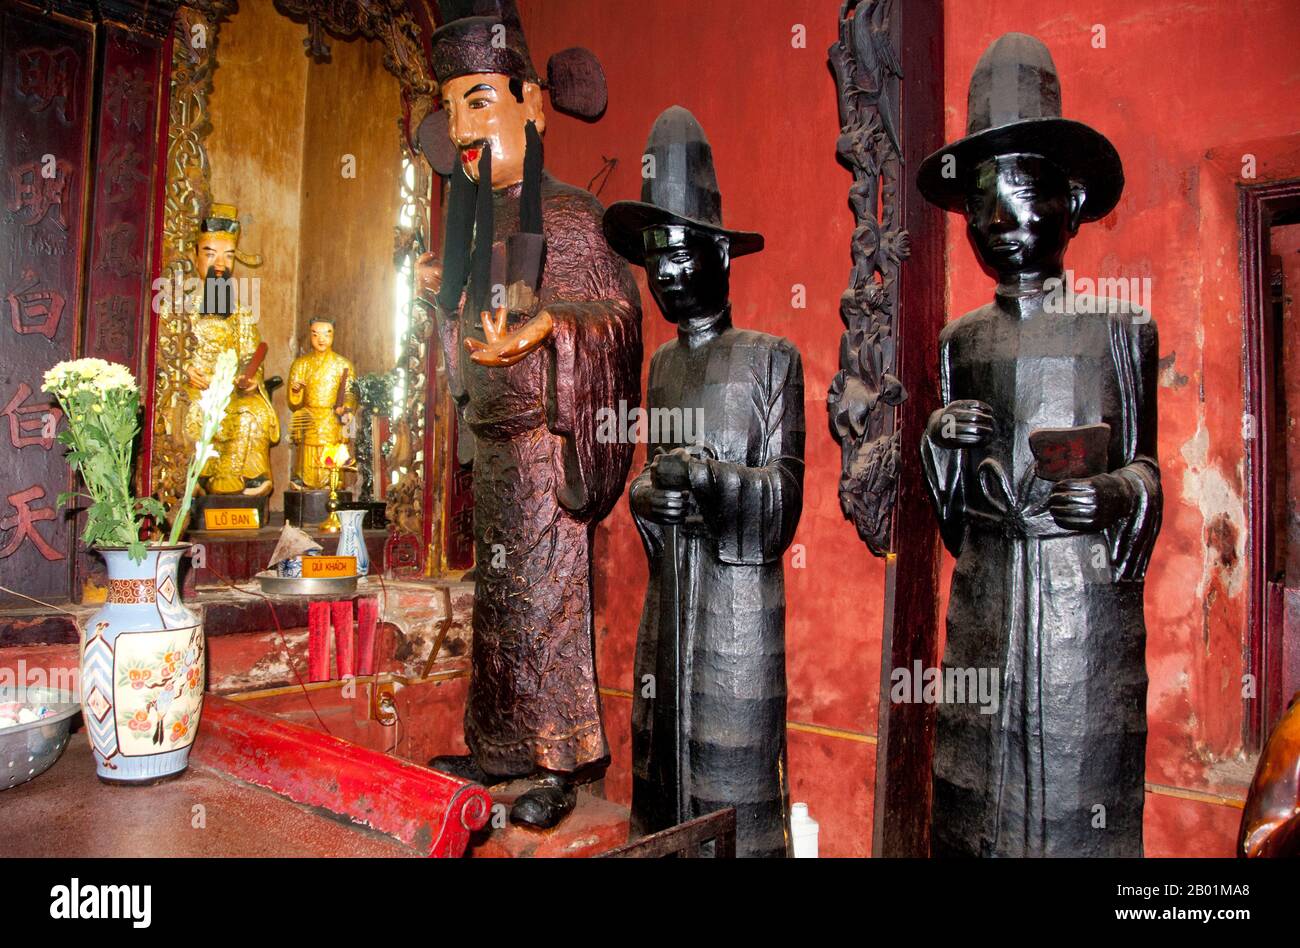 Vietnam : les serviteurs du roi de l'enfer, pagode de l'empereur de Jade, Ho Chi Minh ville (Saigon). Chua Ngoc Hoang ou «Pagode de l'empereur de jade» a été construit en 1909, c'est un temple chinois spectaculairement coloré dédié à Ngoc Huang, empereur de jade du panthéon taoïste. L'Empereur de Jade est le souverain taoïste du ciel et de tous les royaumes d'existence ci-dessous, y compris celui de l'Homme et de l'Enfer, selon la mythologie taoïste. Il est l'un des dieux les plus importants du panthéon de la religion traditionnelle chinoise. Dans la croyance taoïste, l'Empereur de Jade gouverne tout le Royaume des mortels et en dessous. Banque D'Images